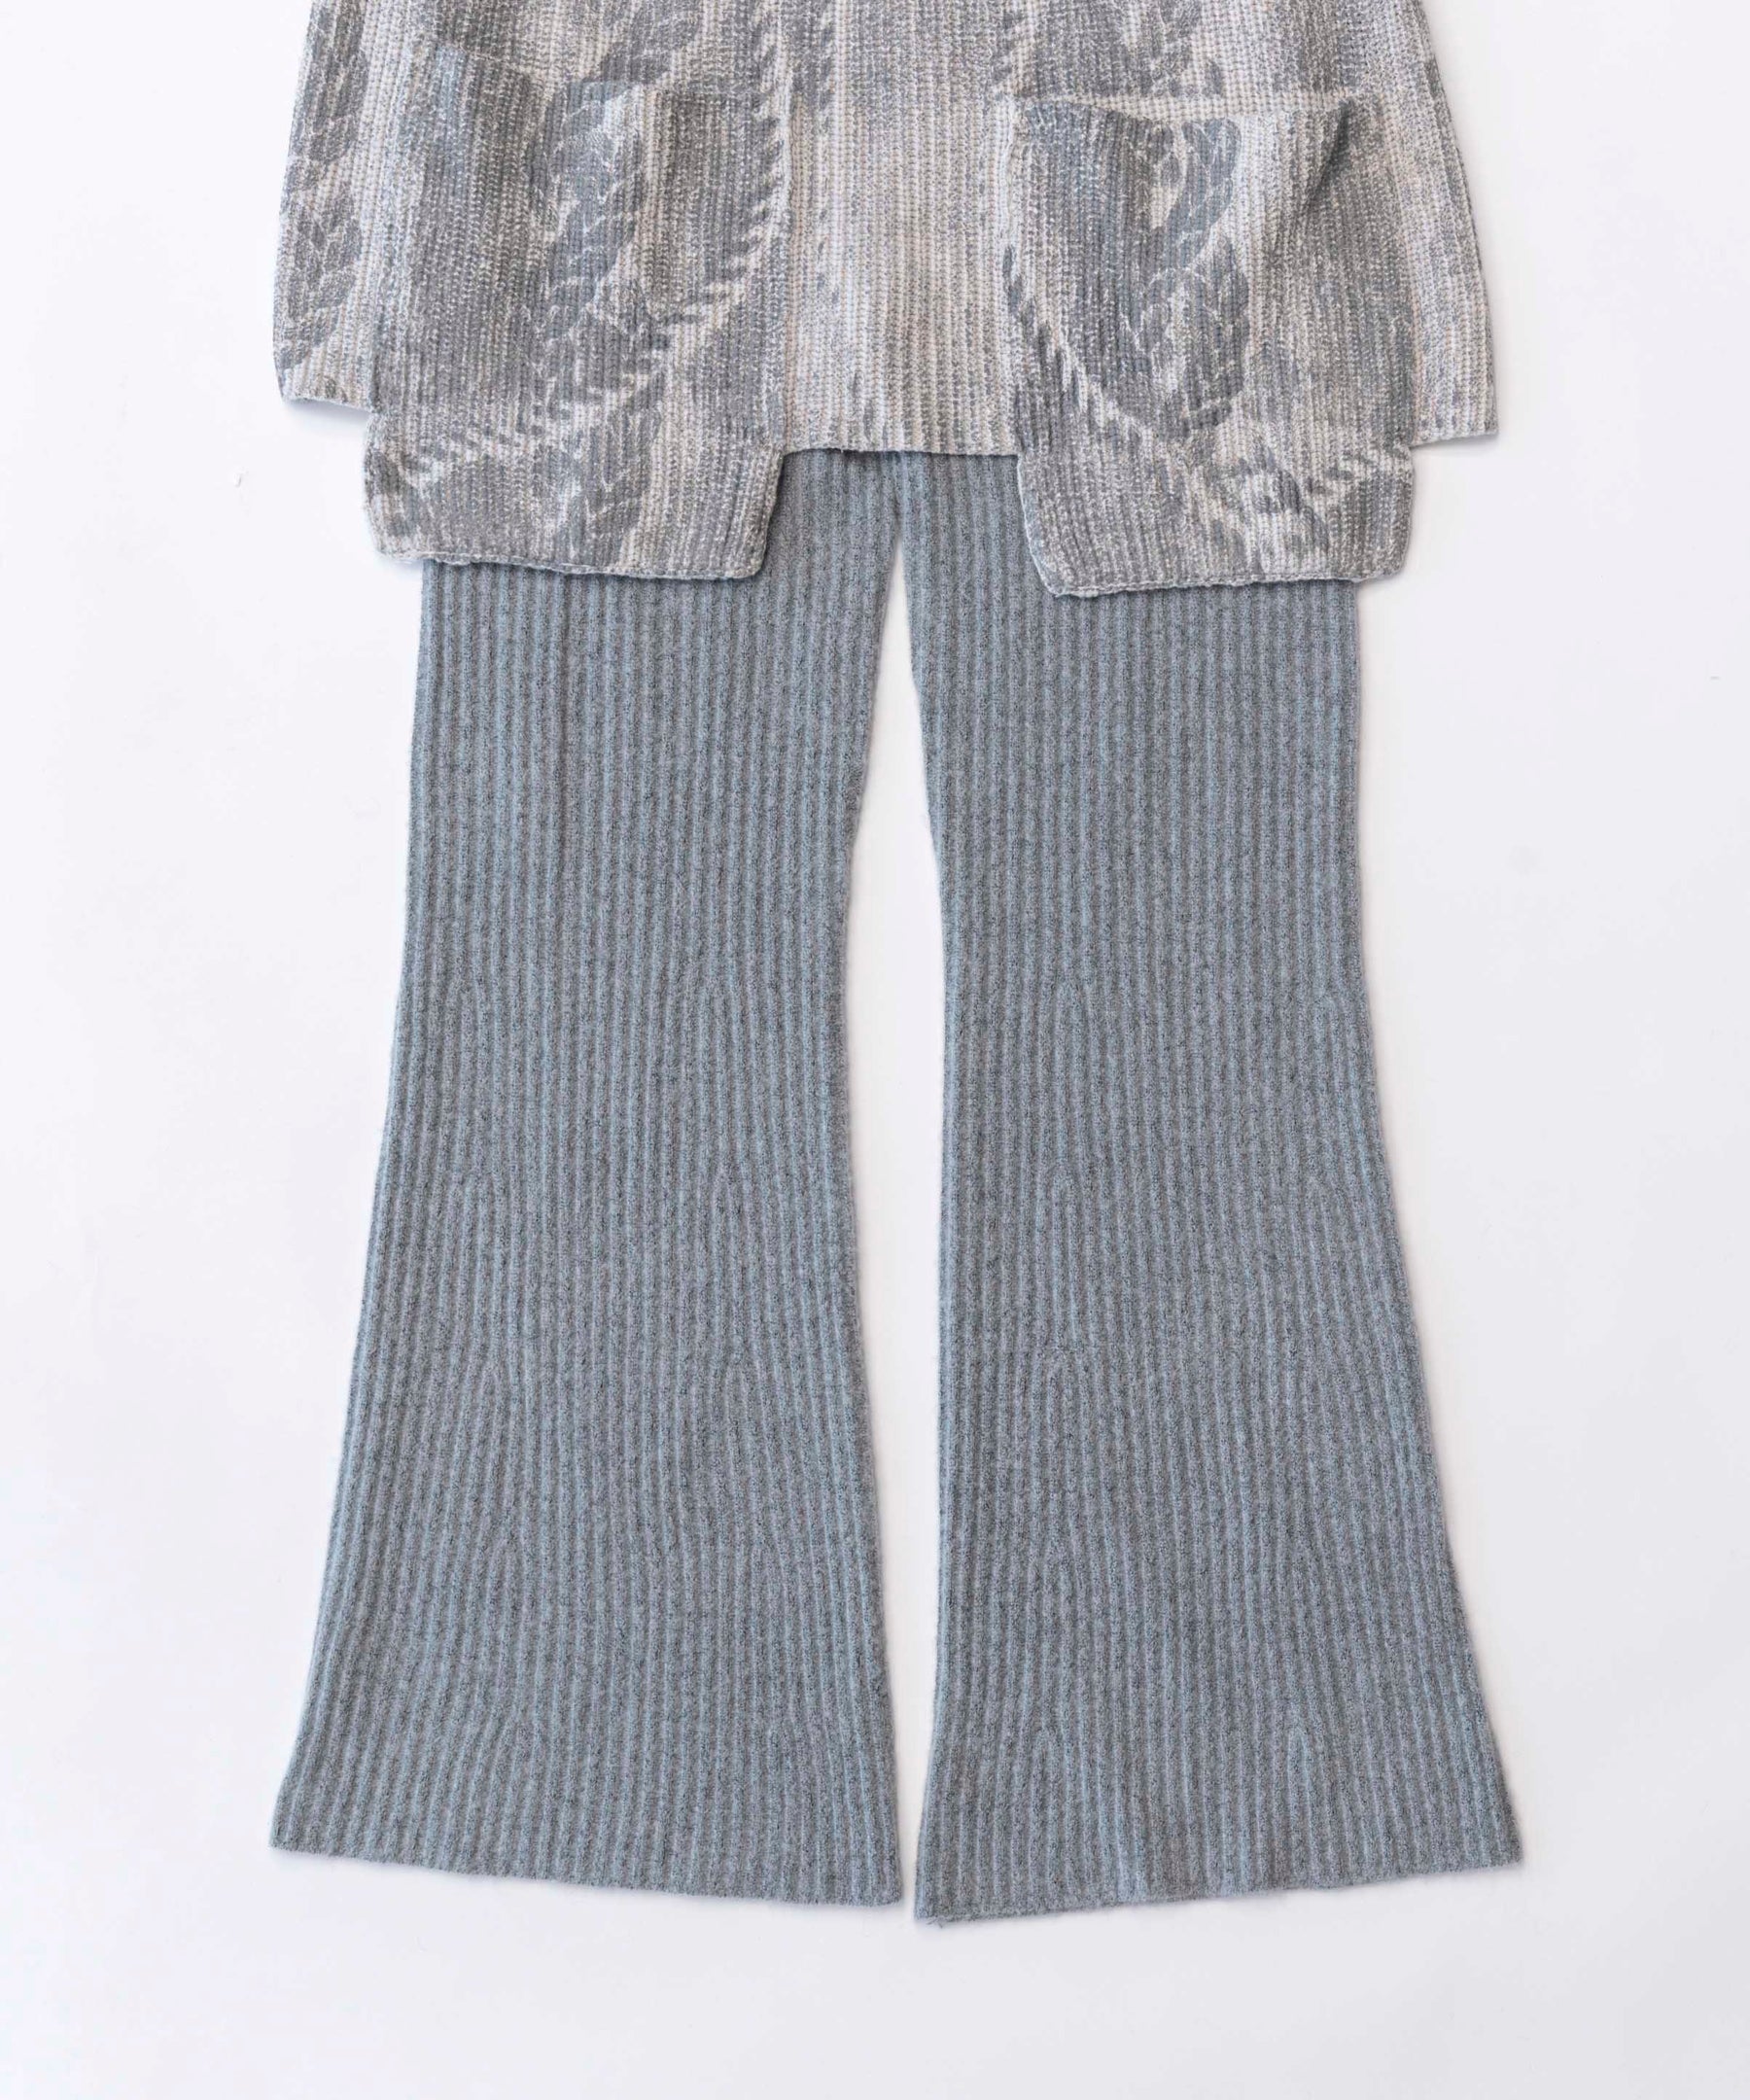 Skirt Layered Knit Pants